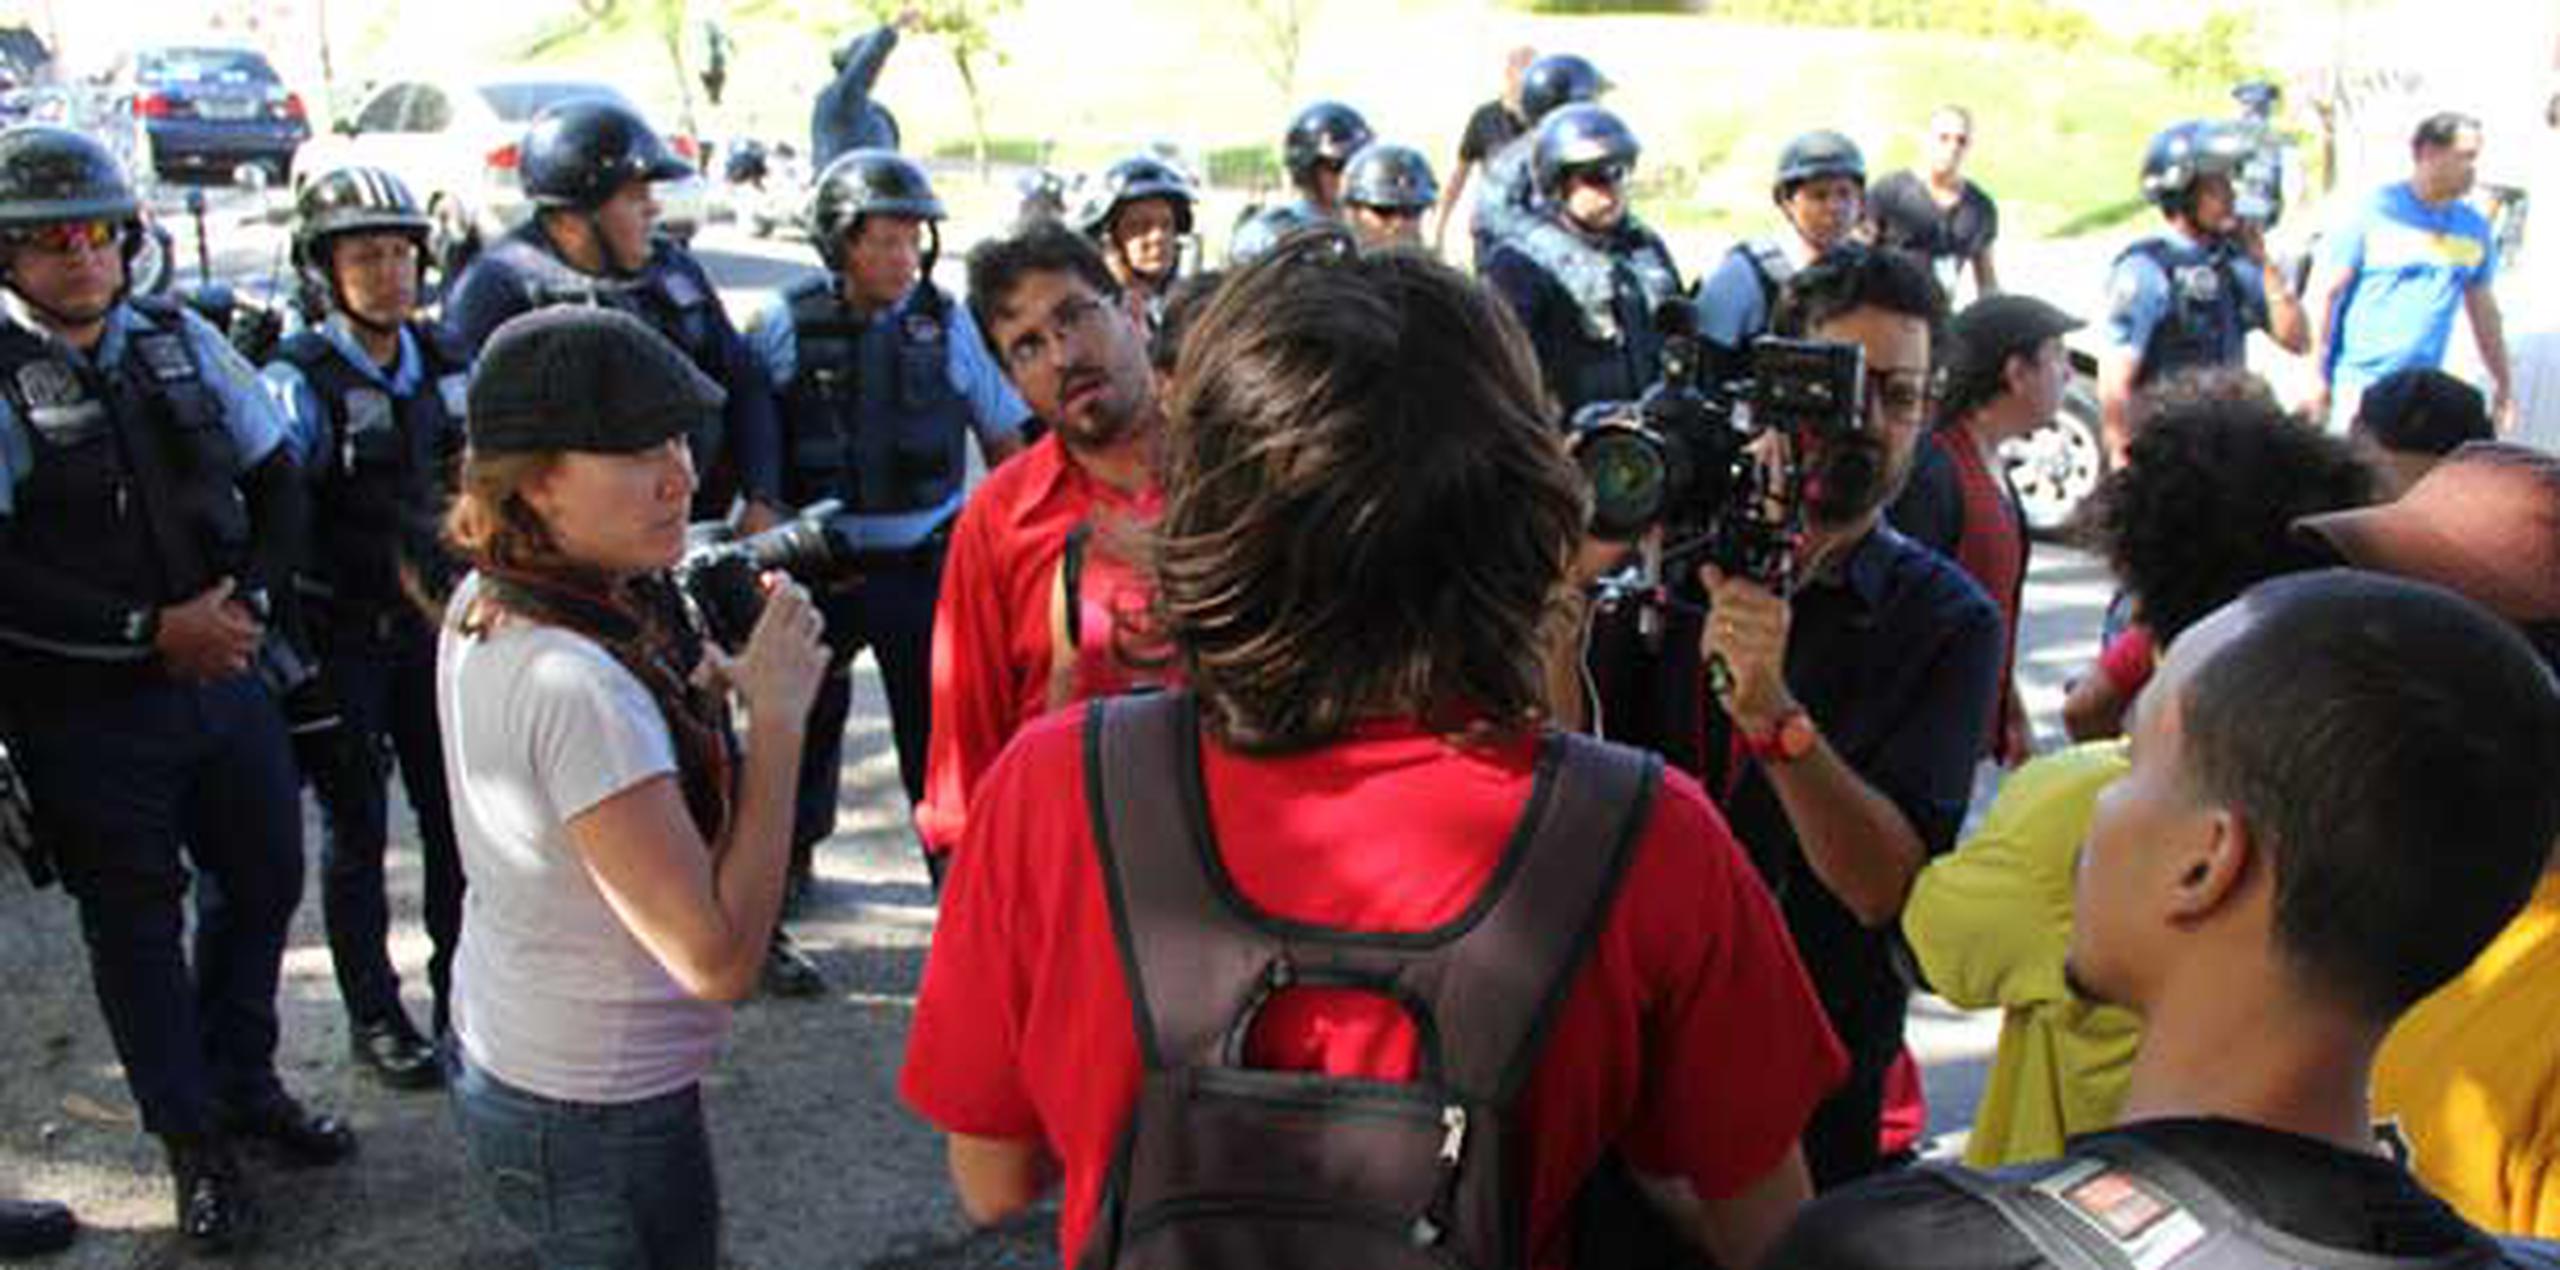 Jóvenes reaccionan al arresto de dos personas durante la manifestación en el Capitolio.(alex.figueroa@gfrmedia.com)
